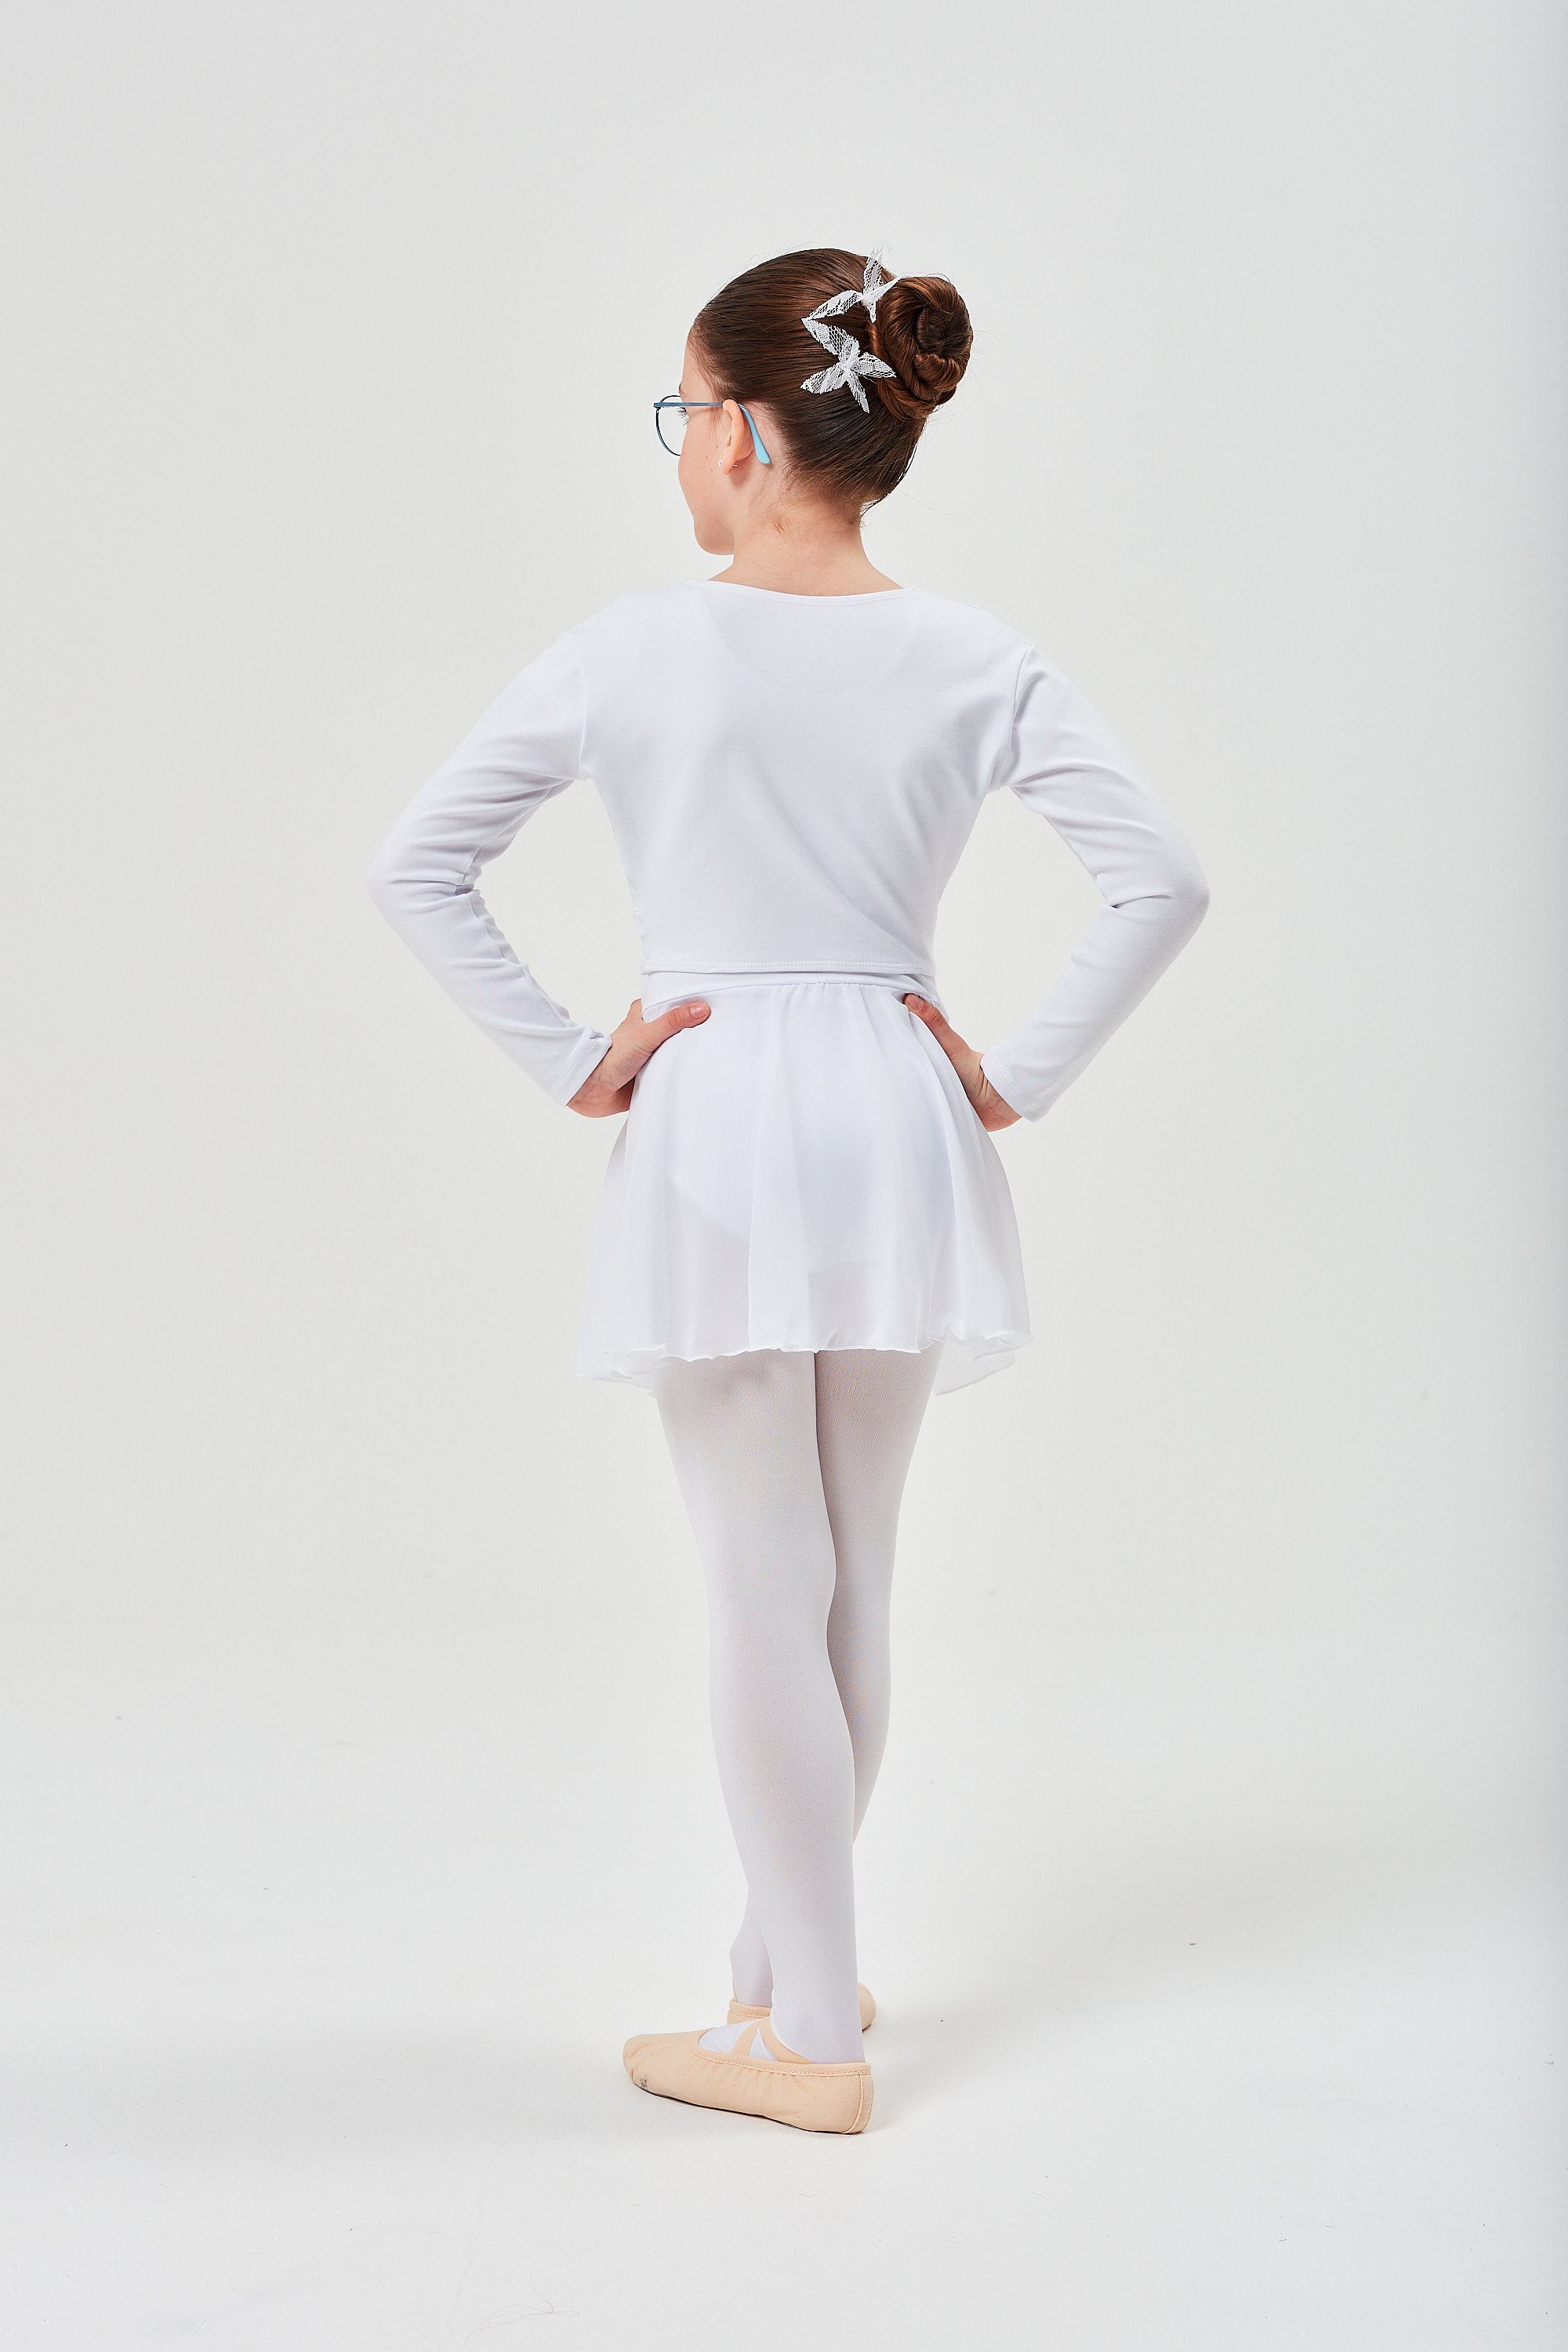 tanzmuster Crop-Top weiß fürs Mia Top Oberteil weicher Baumwolle für Langarm Ballett Ballett Kinder aus Mädchen wunderbar